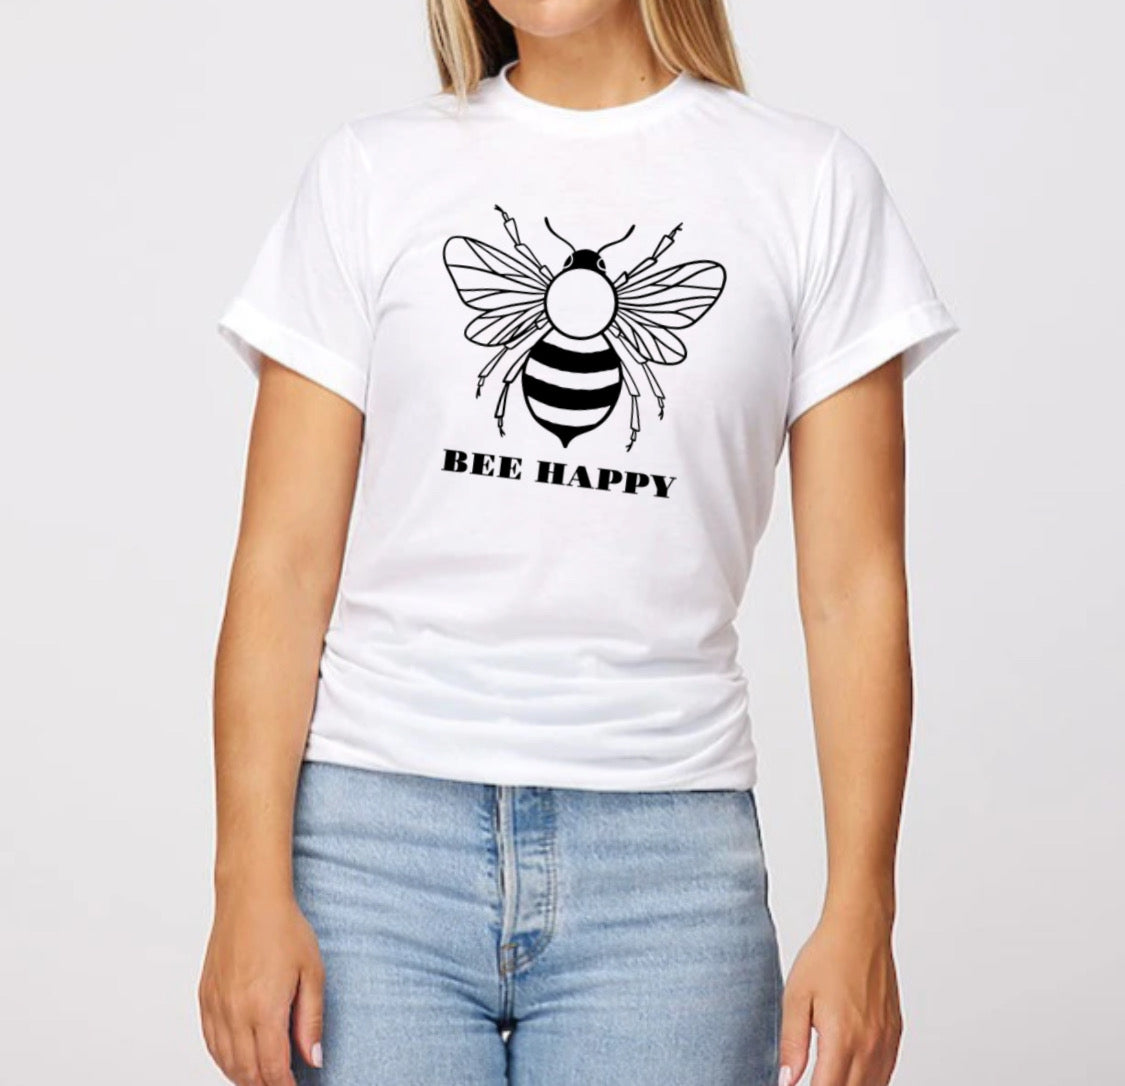 BEE HAPPY Tshirt